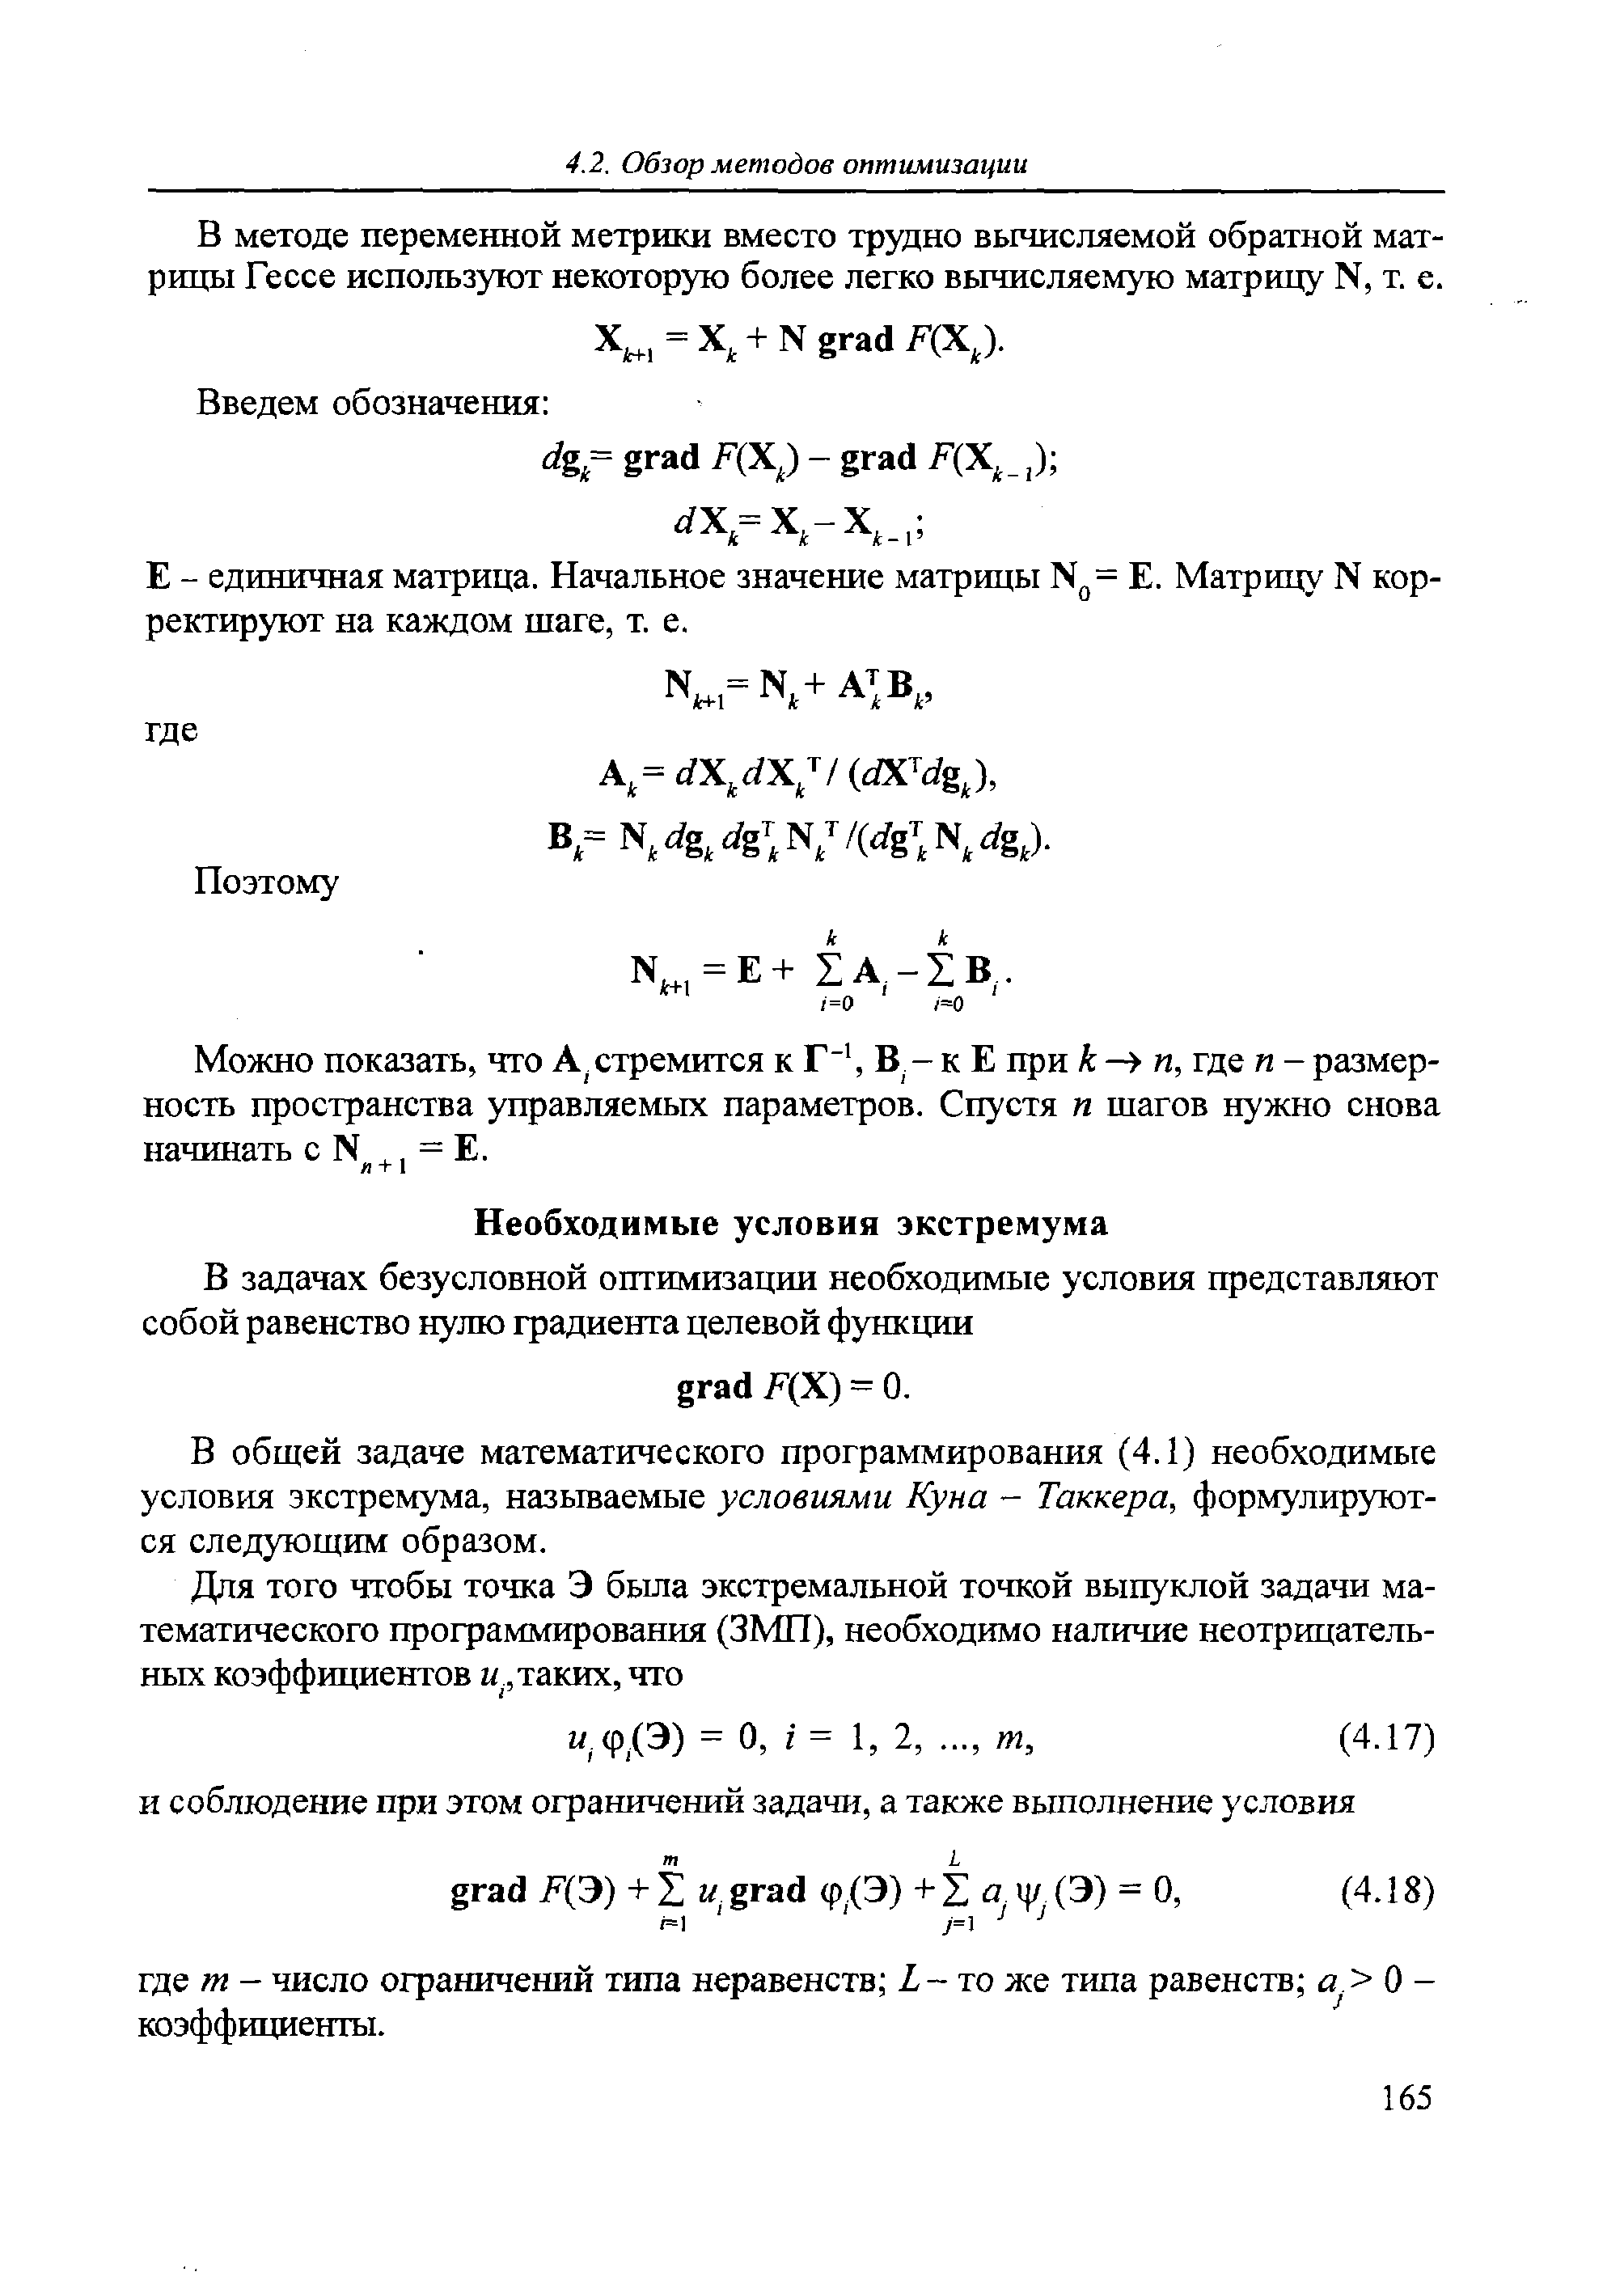 В общей задаче математического программирования (4.1) необходимые условия экстремума, называемые условиями Куна - Такквра, формулируются следующим образом.
